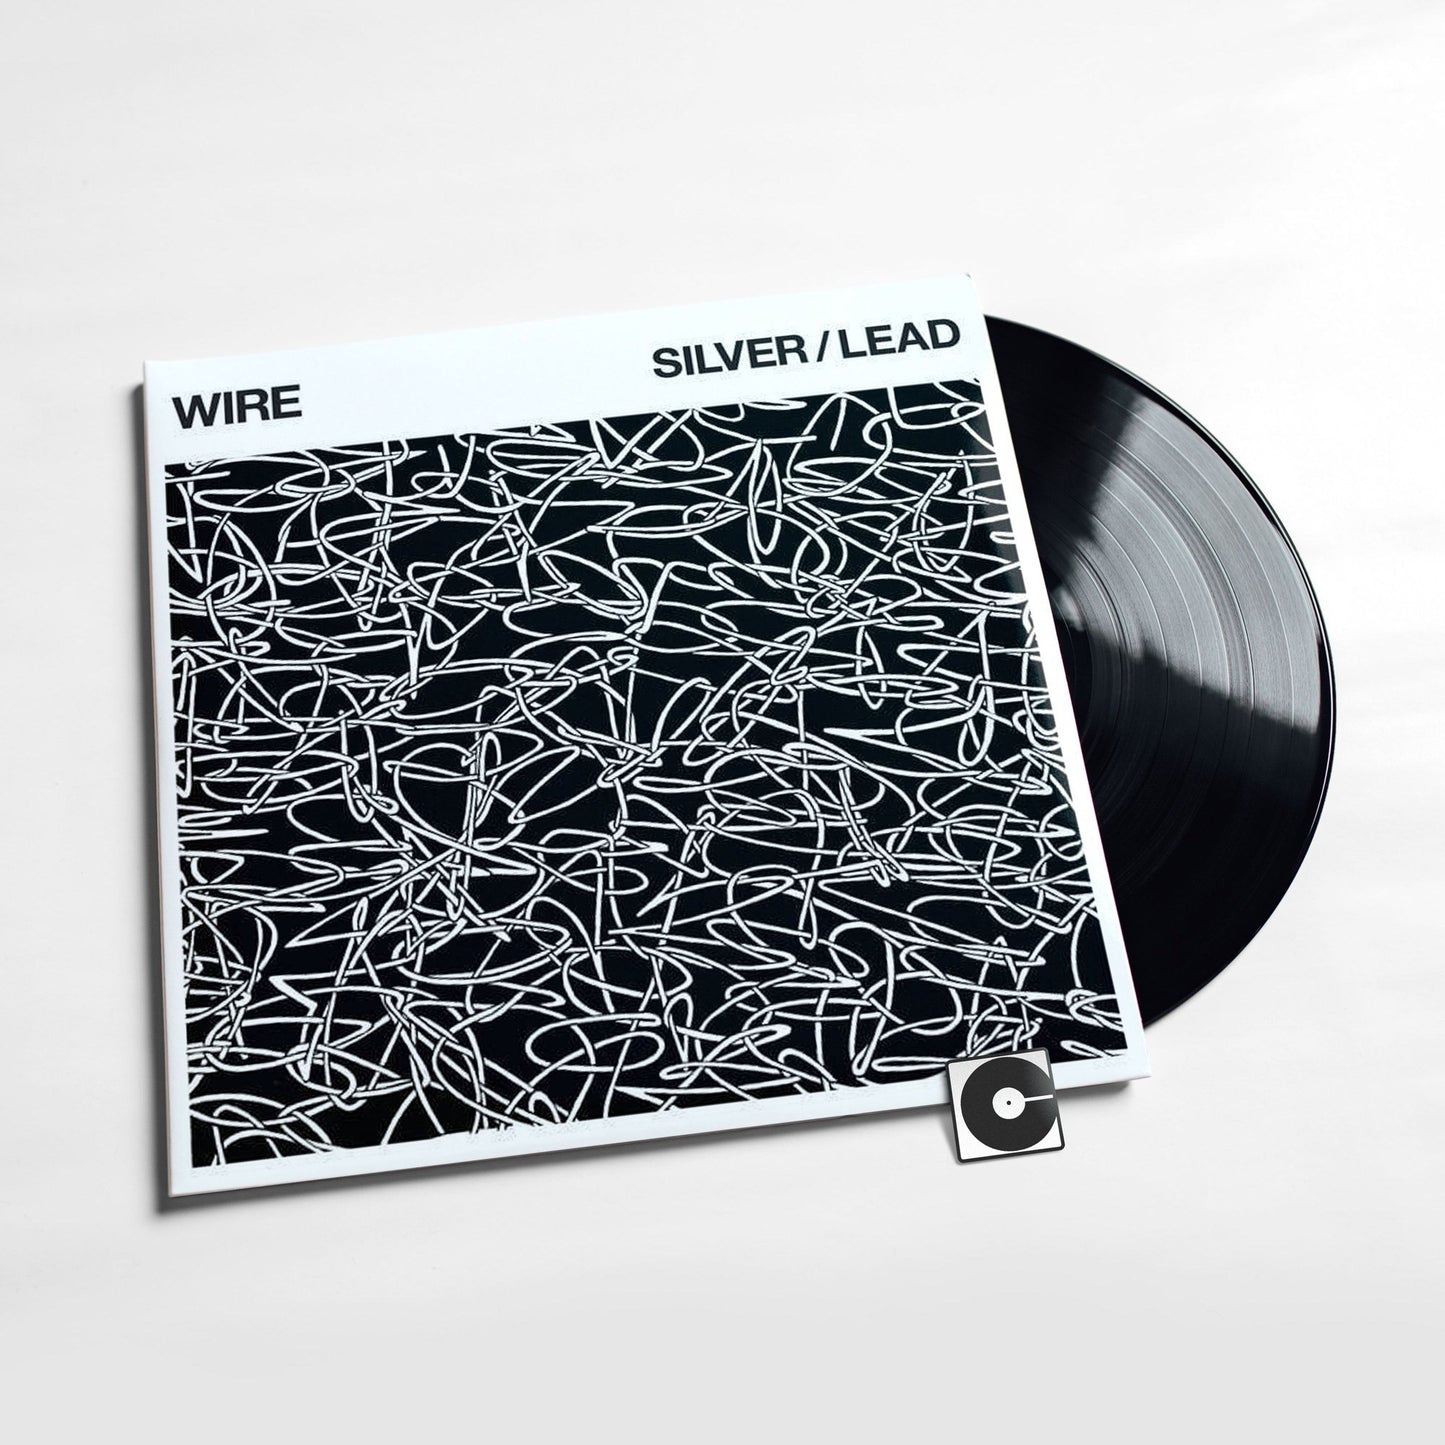 Wire - "Silver/Lead"